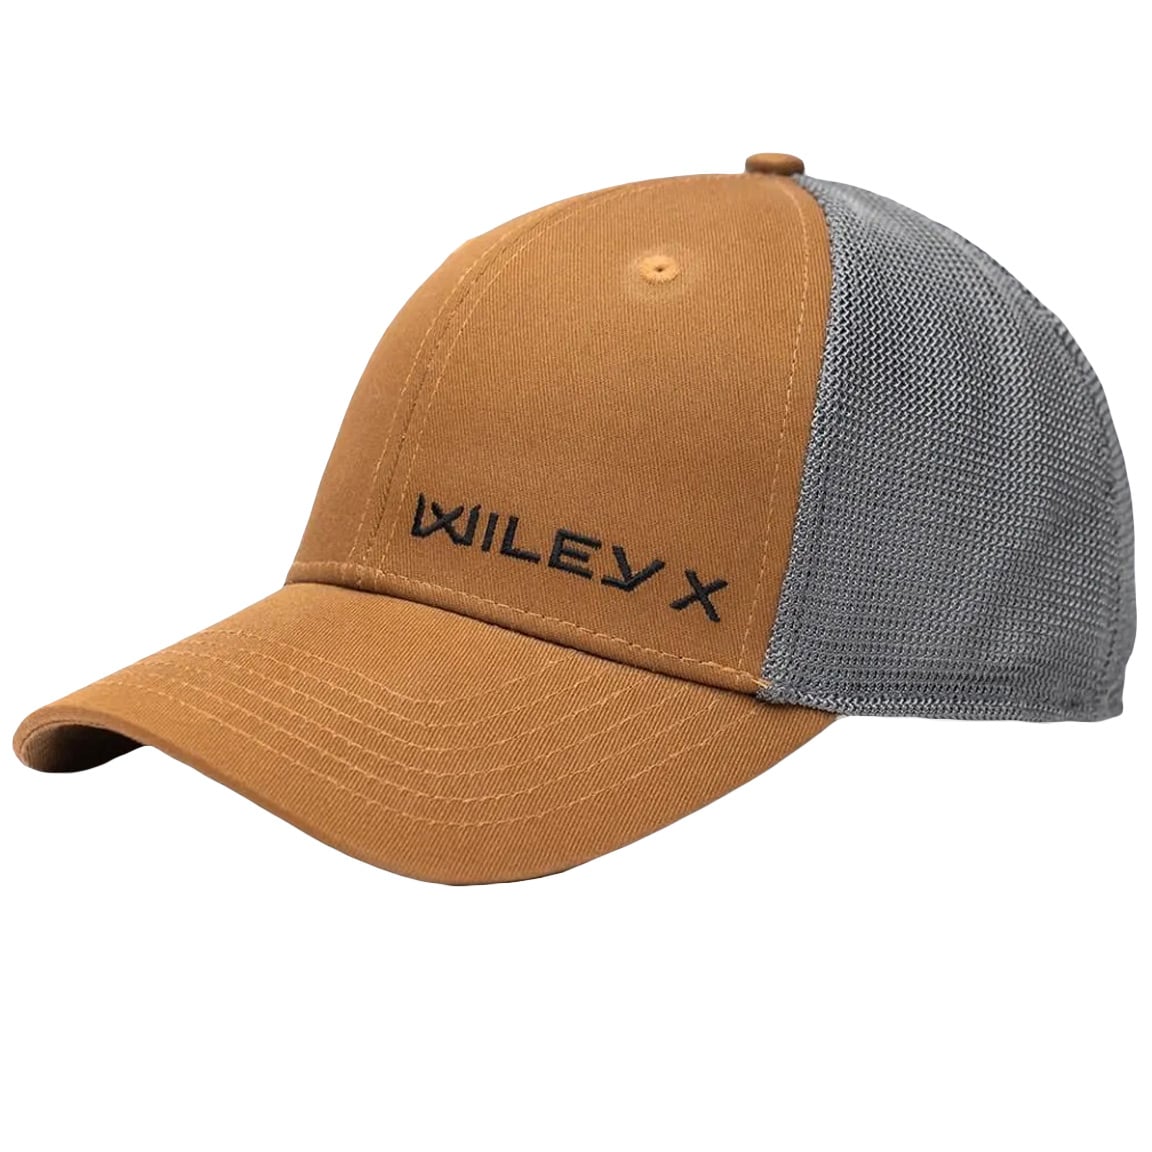 Czapka z daszkiem Wiley X Trucker Cap - Tan/Grey/Black Wiley X 